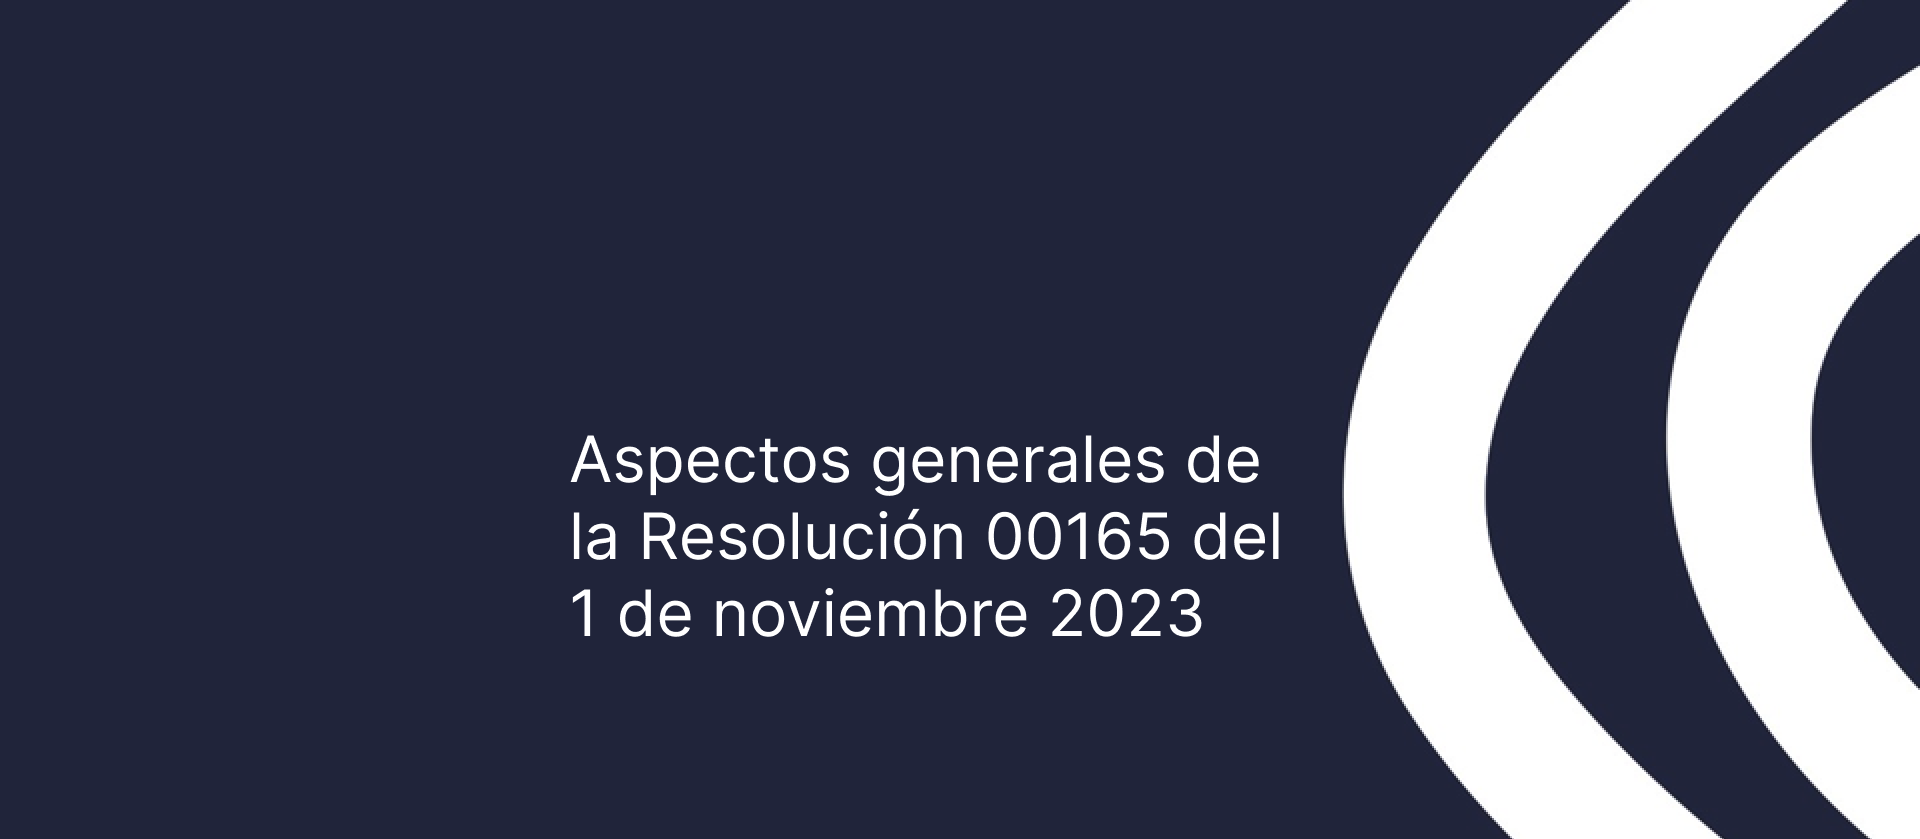 Imagen de post Aspectos generales Resolución 00165 del 1 de noviembre de 2023